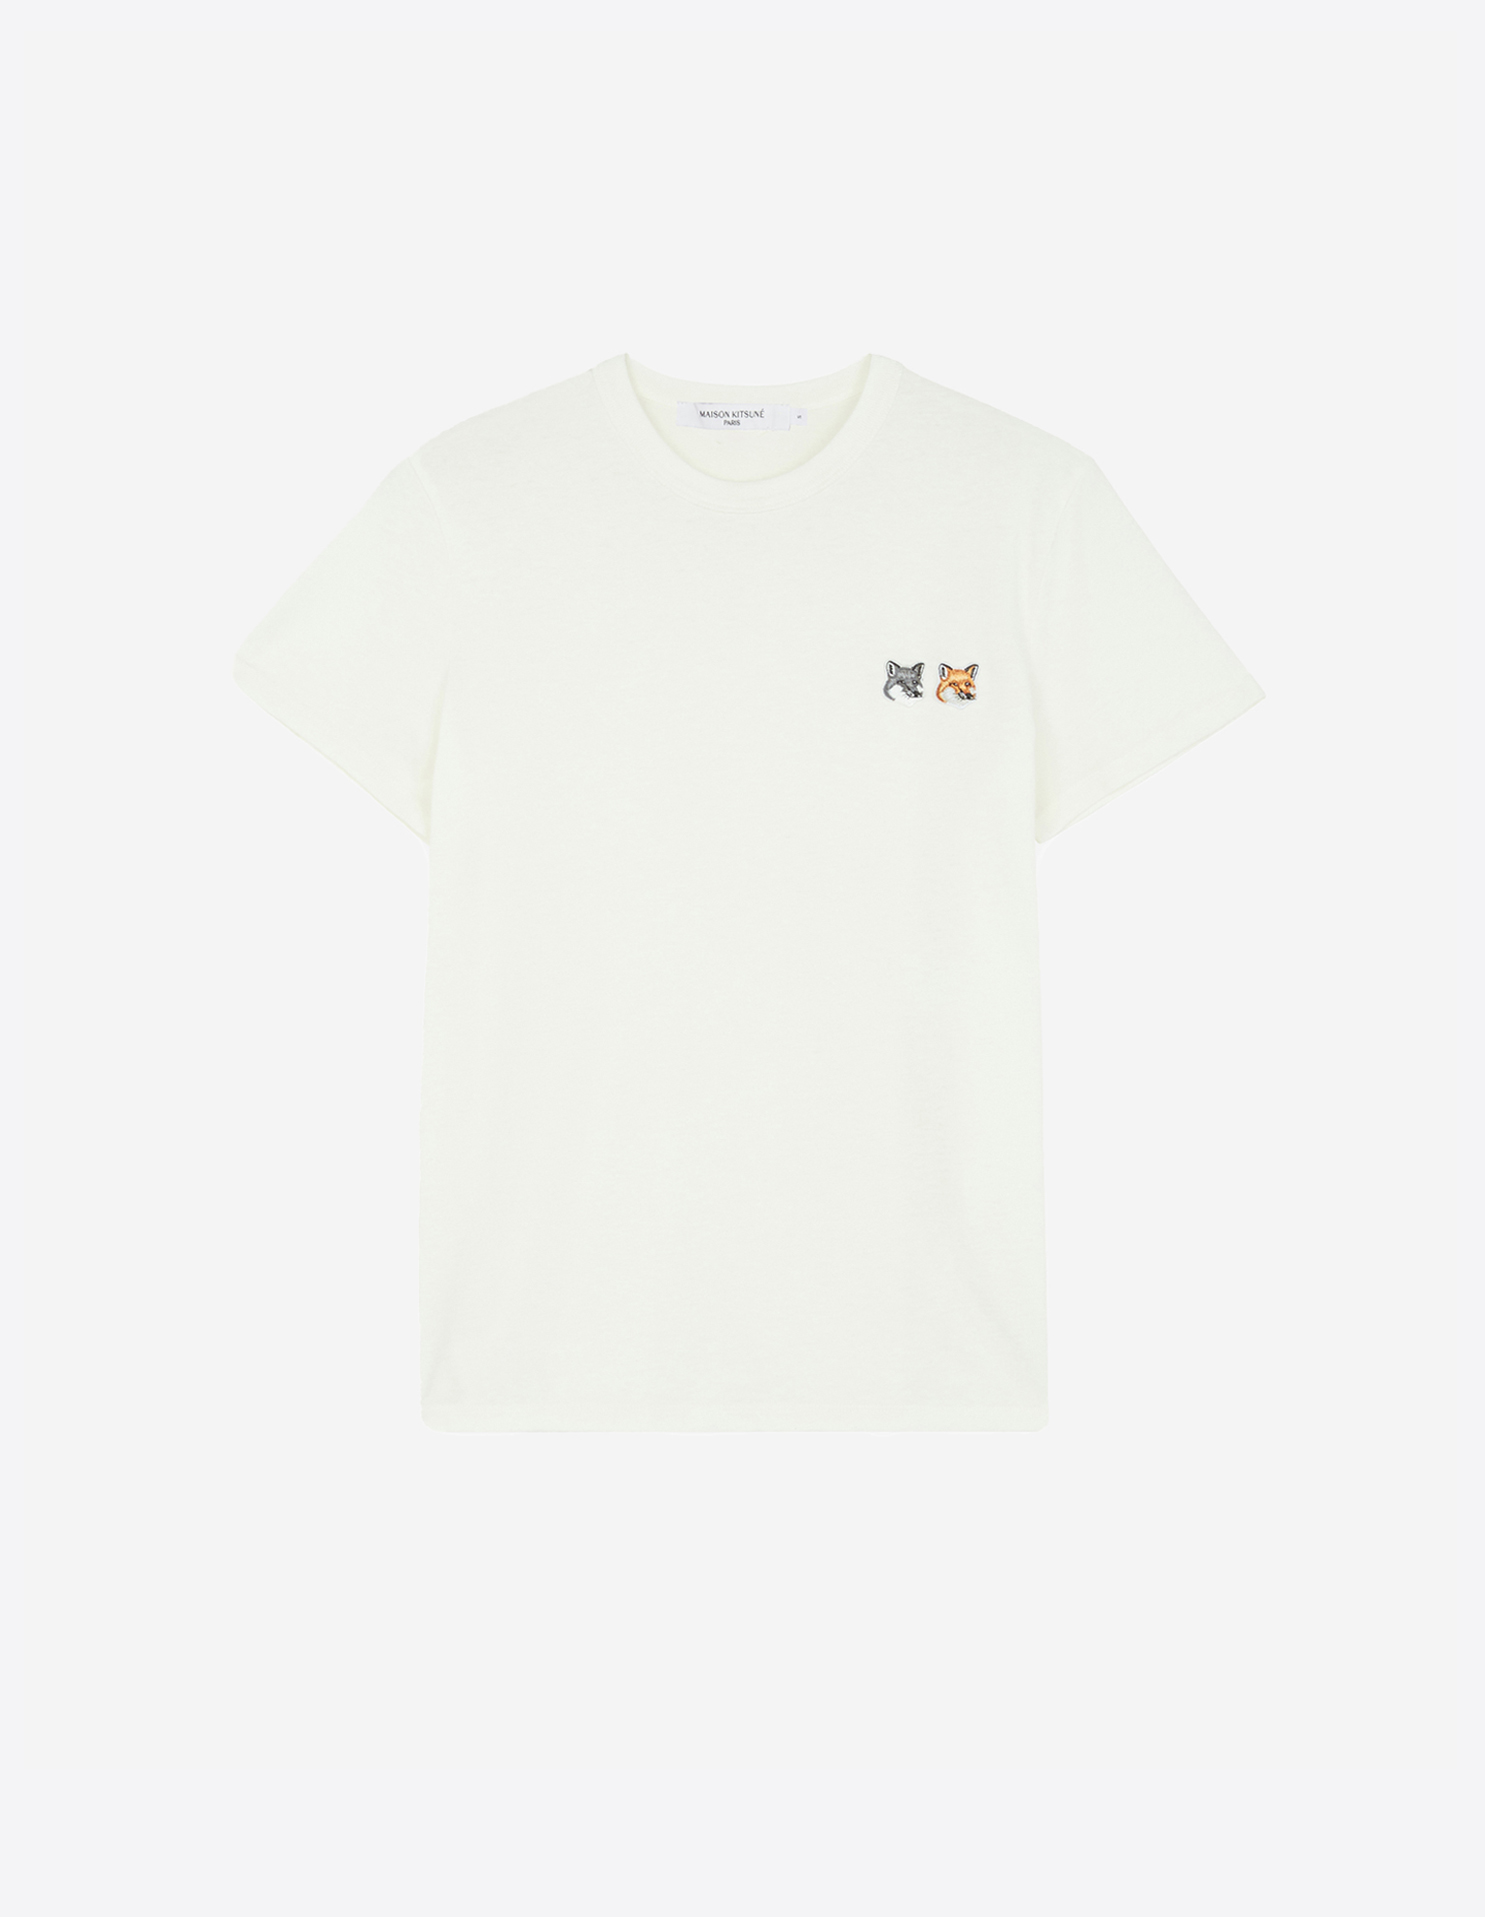 メゾン キツネ ダブルフォックスヘッド パッチ クラシック Tシャツ | Maison Kitsuné